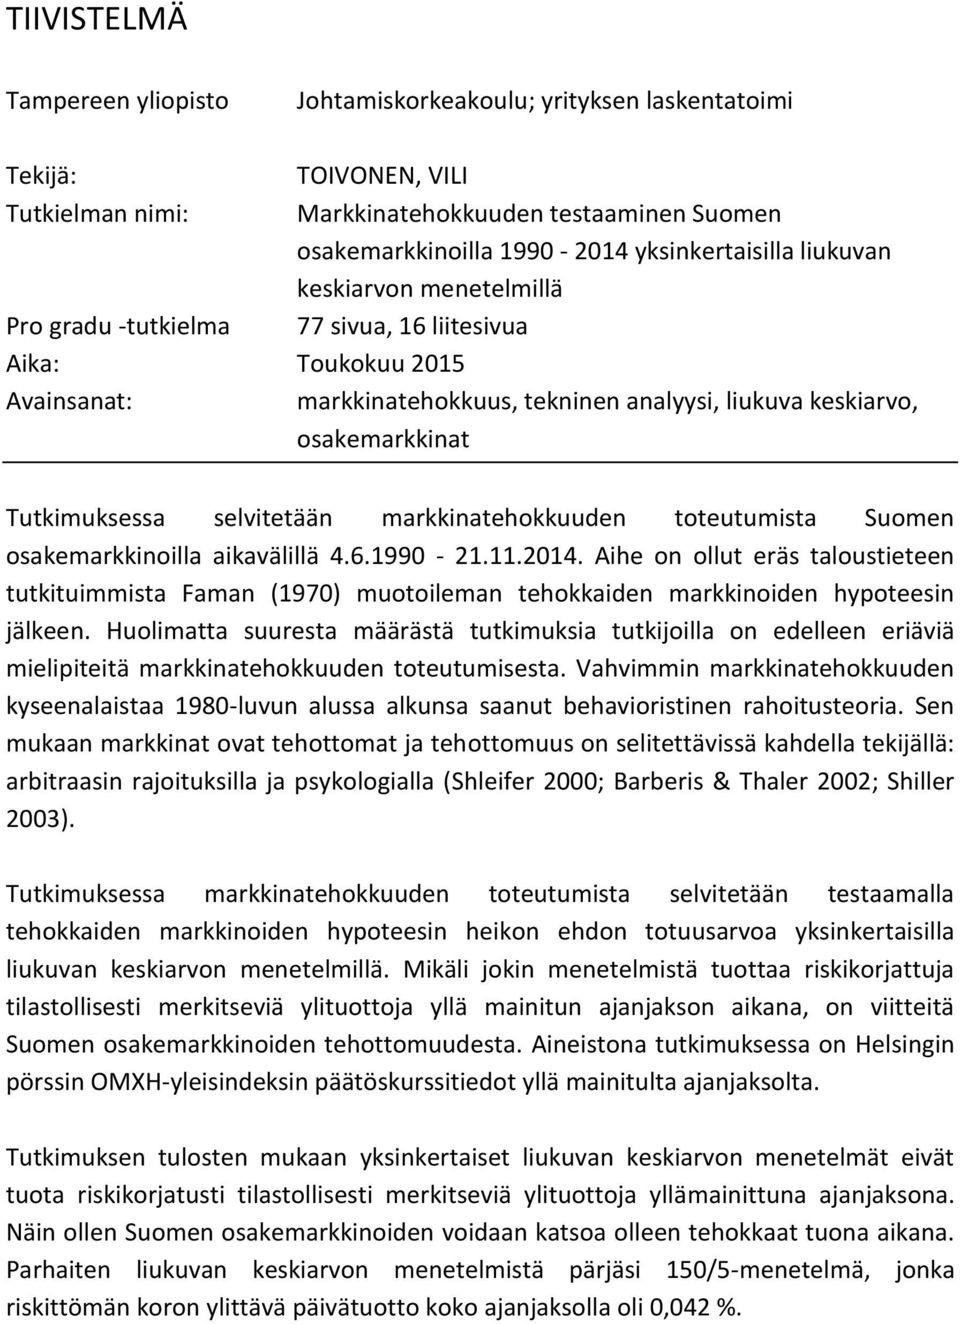 Tutkimuksessa selvitetään markkinatehokkuuden toteutumista Suomen osakemarkkinoilla aikavälillä 4.6.1990-21.11.2014.